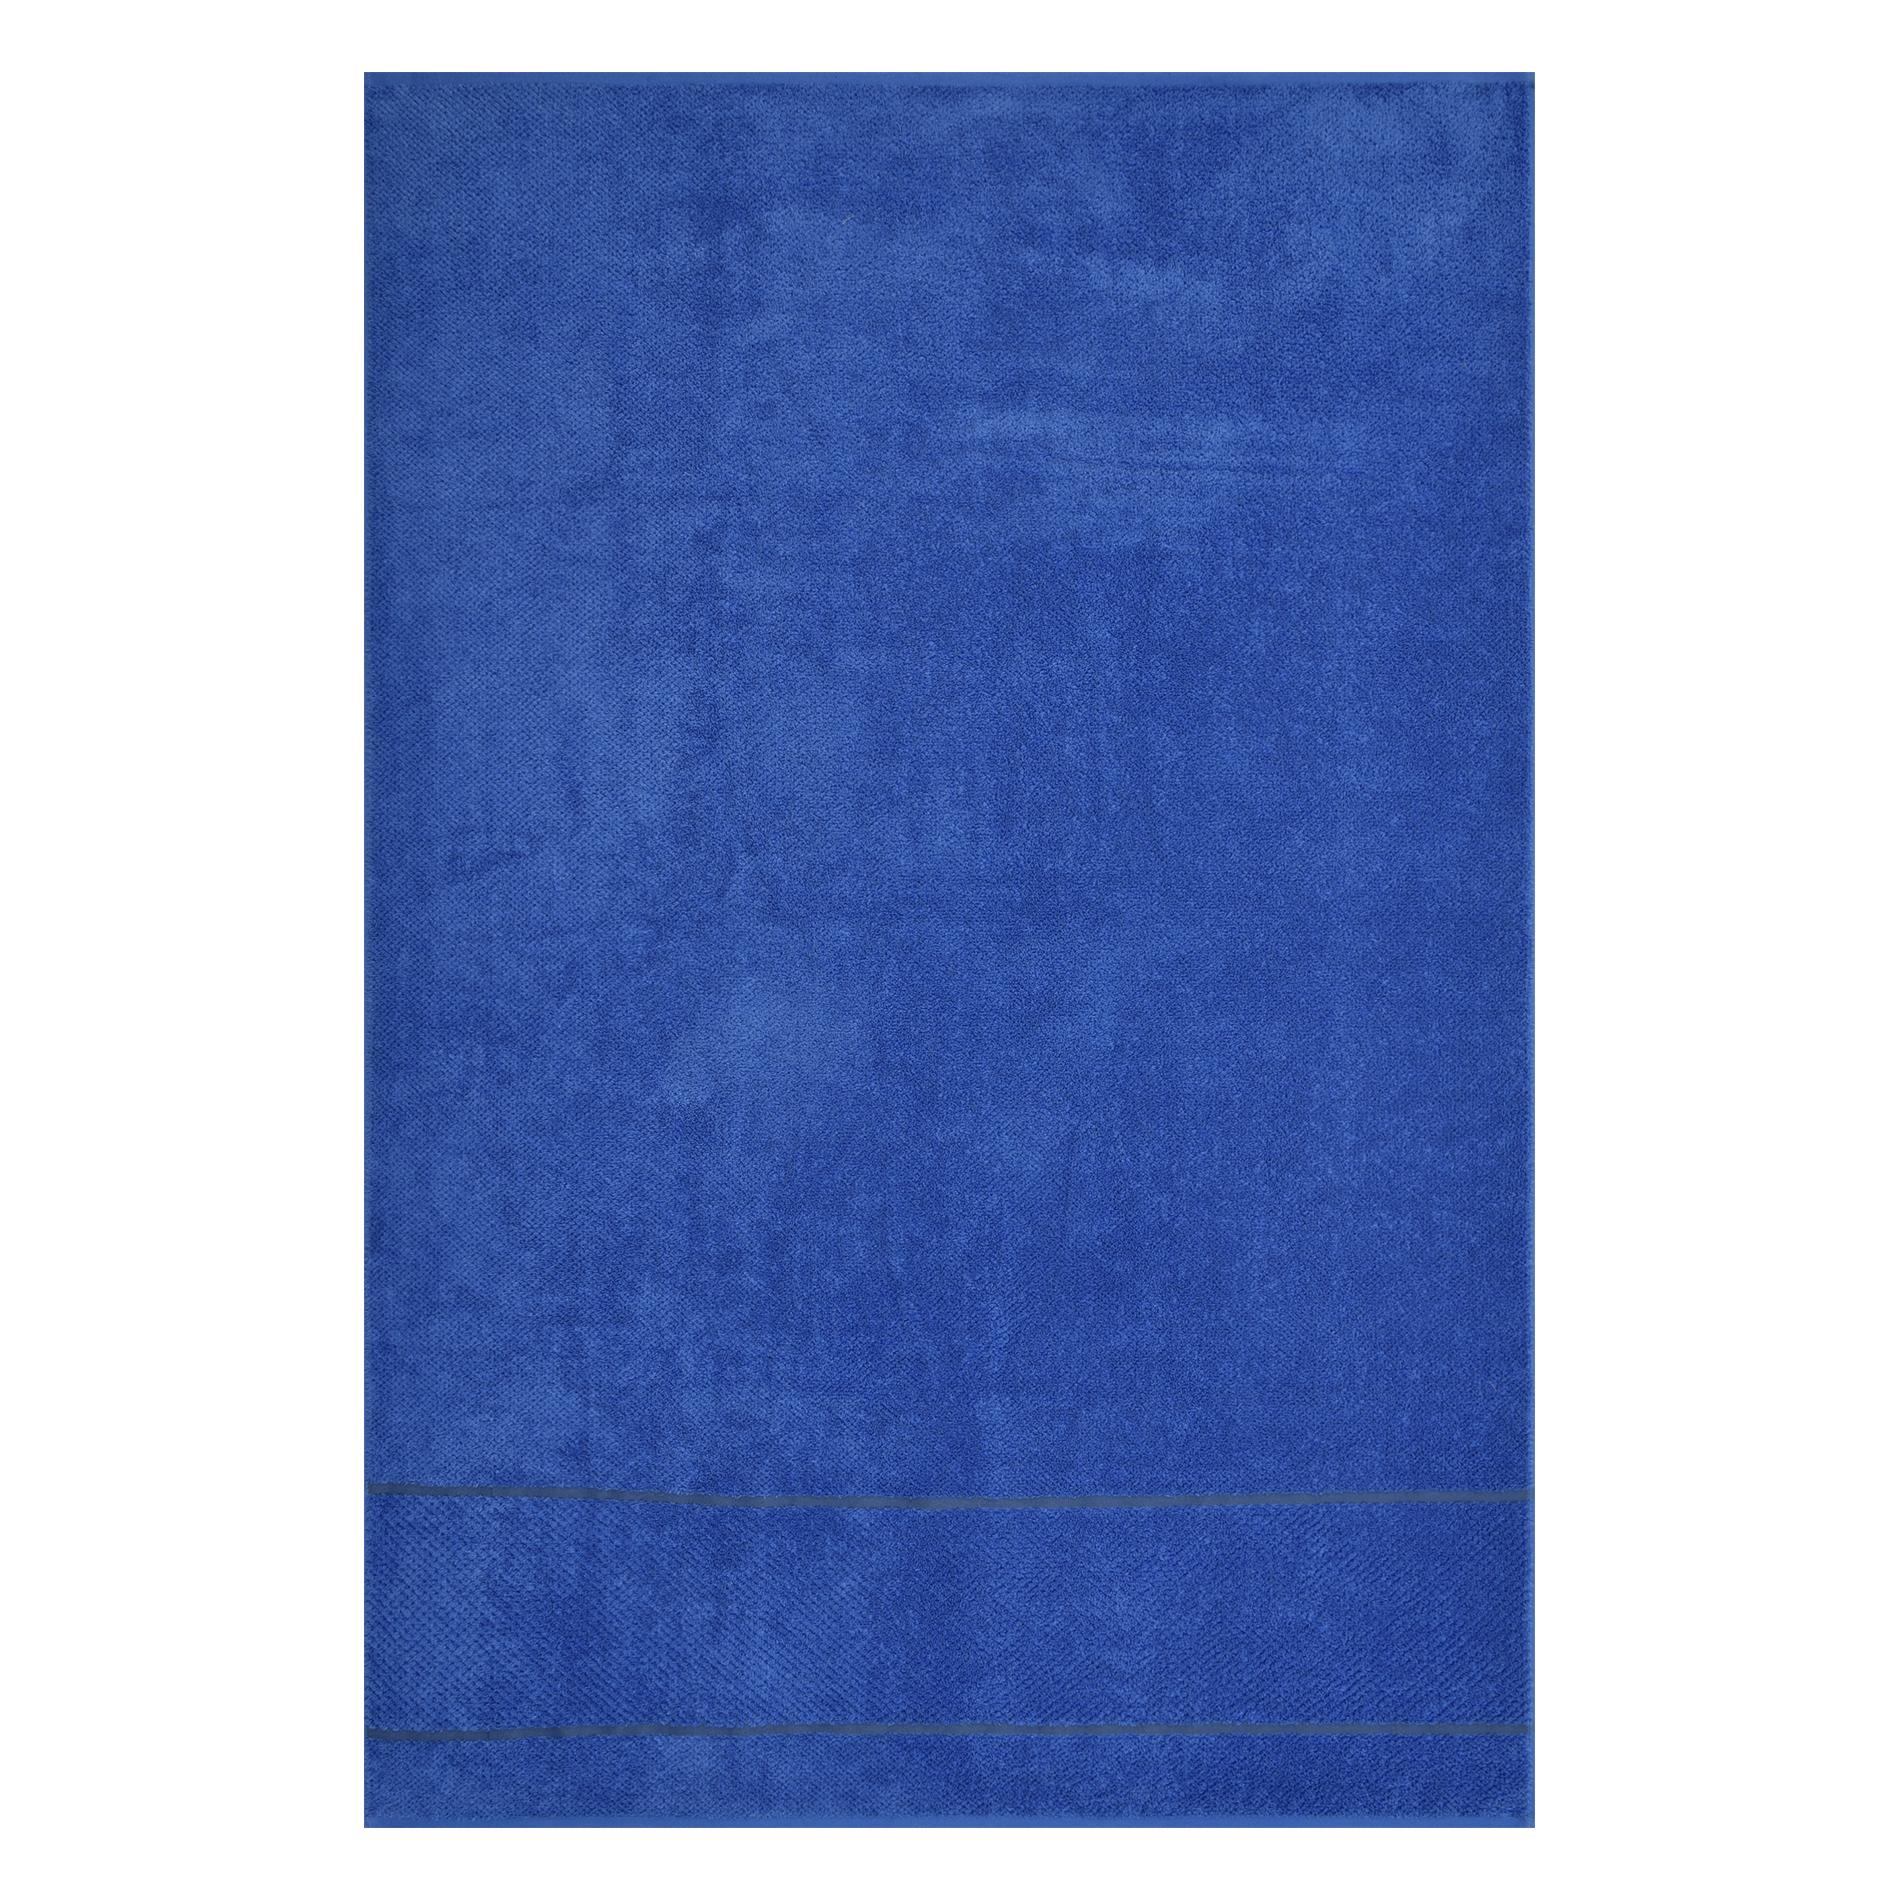 Махровое полотенце Cleanelly Fiordaliso синее 100х150 см полотенце классик темно синий р 50х90